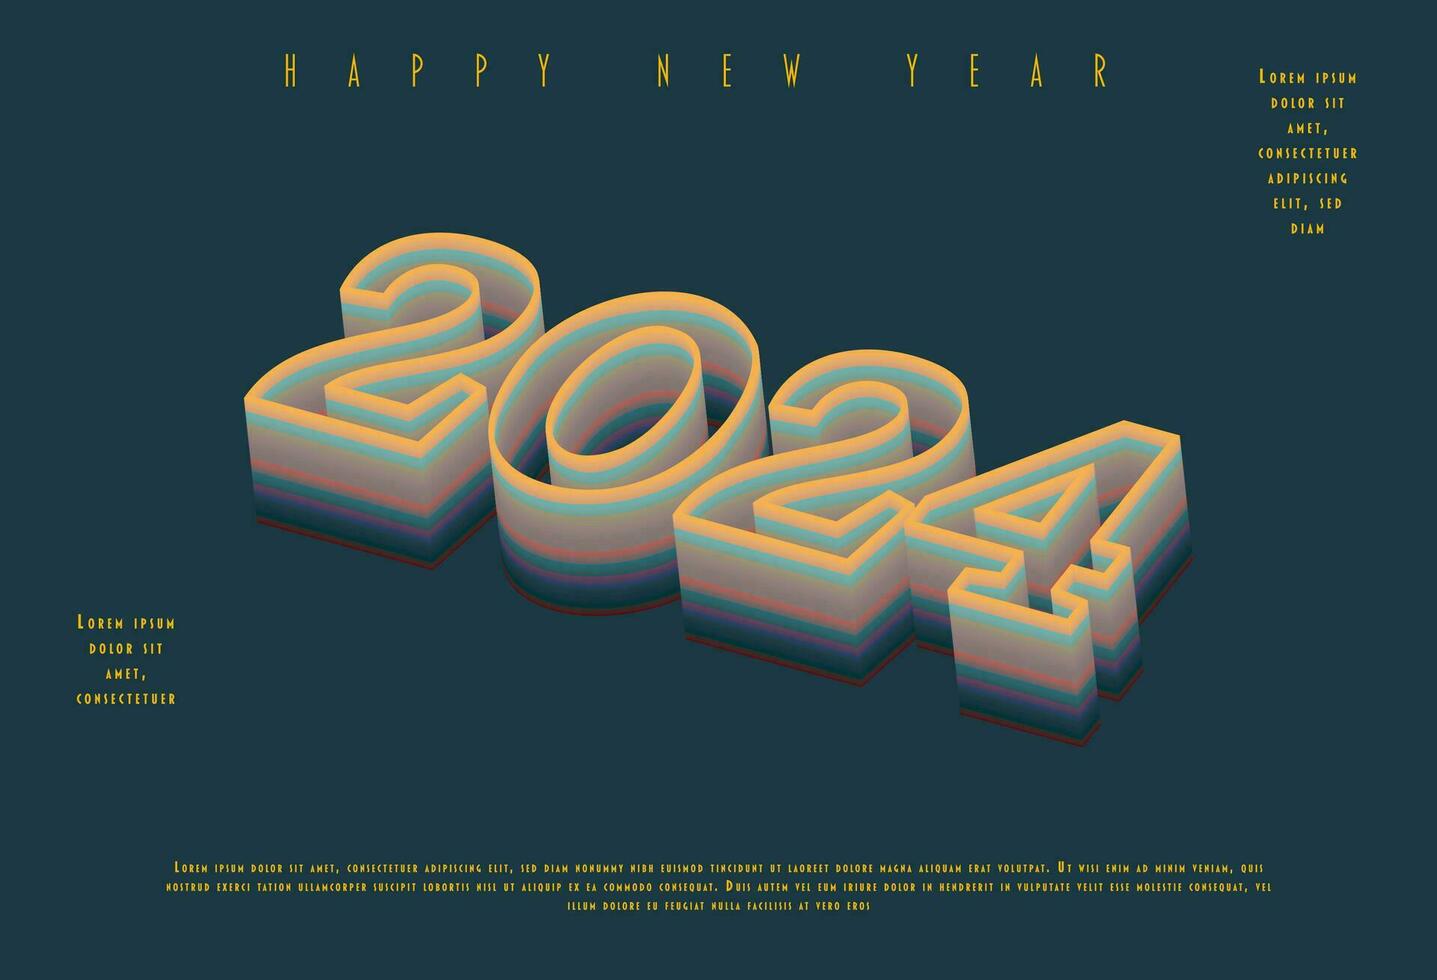 2024 gelukkig nieuw jaar. sjabloon met kleurrijk brief logo voor kalender, poster, folder, spandoek. vector